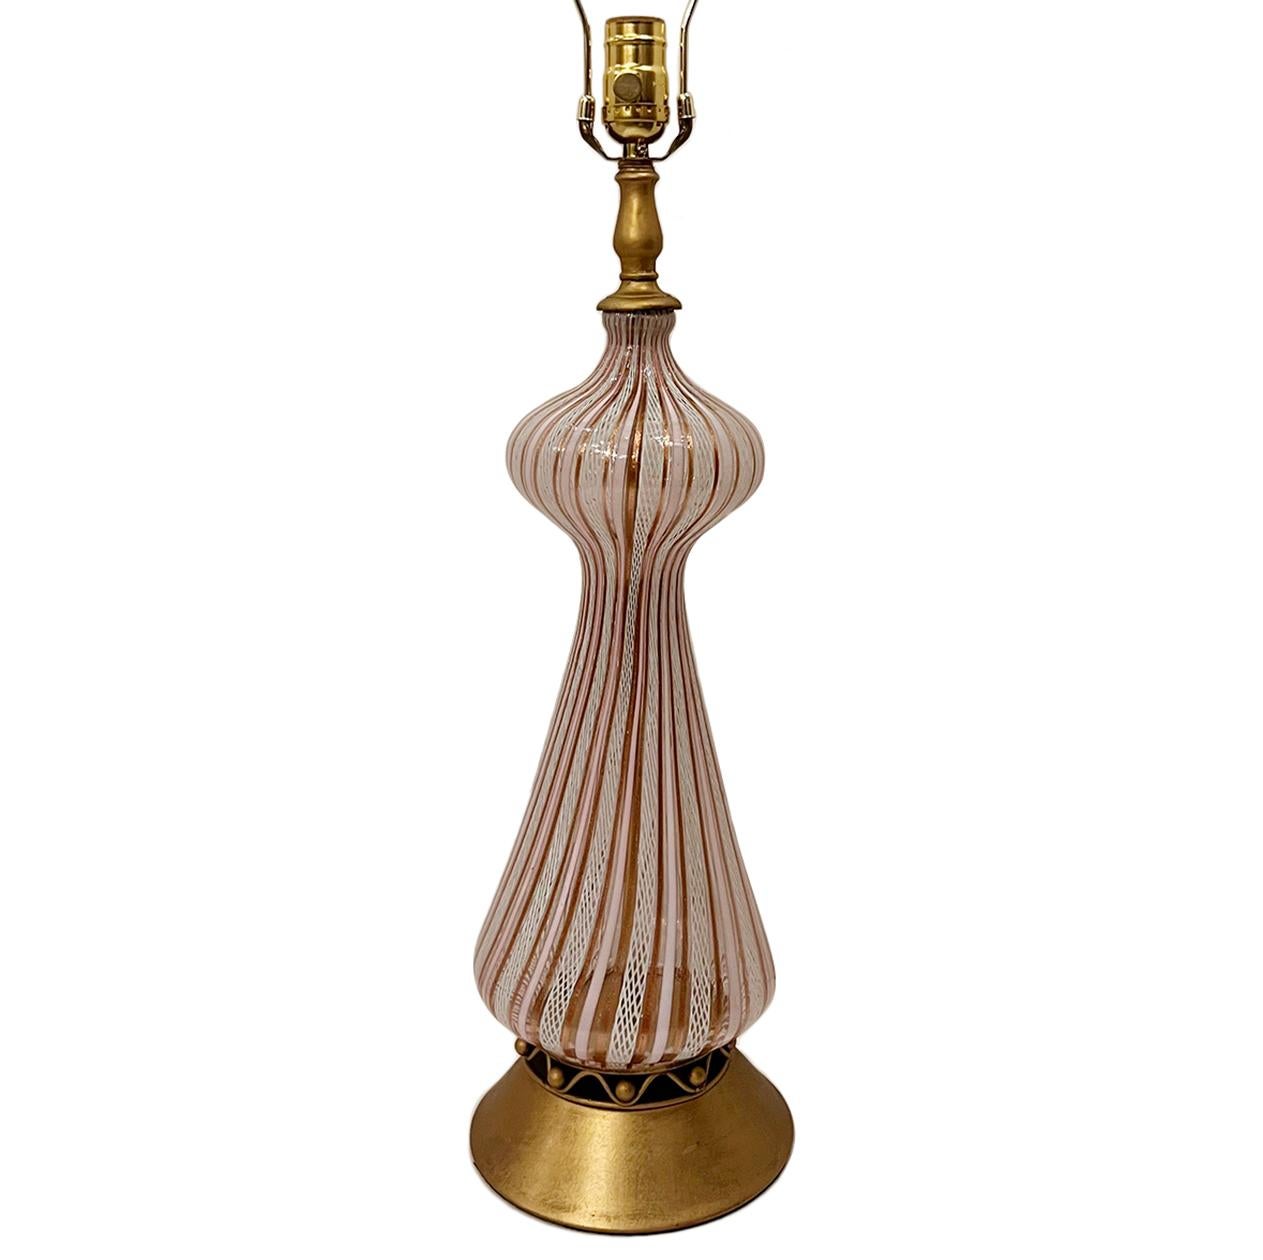 Lampe de table en verre soufflé d'origine italienne, datant des années 1920, avec base dorée.

Mesures :
Hauteur du corps : 21
Hauteur de l'abat-jour à l'appui : 31